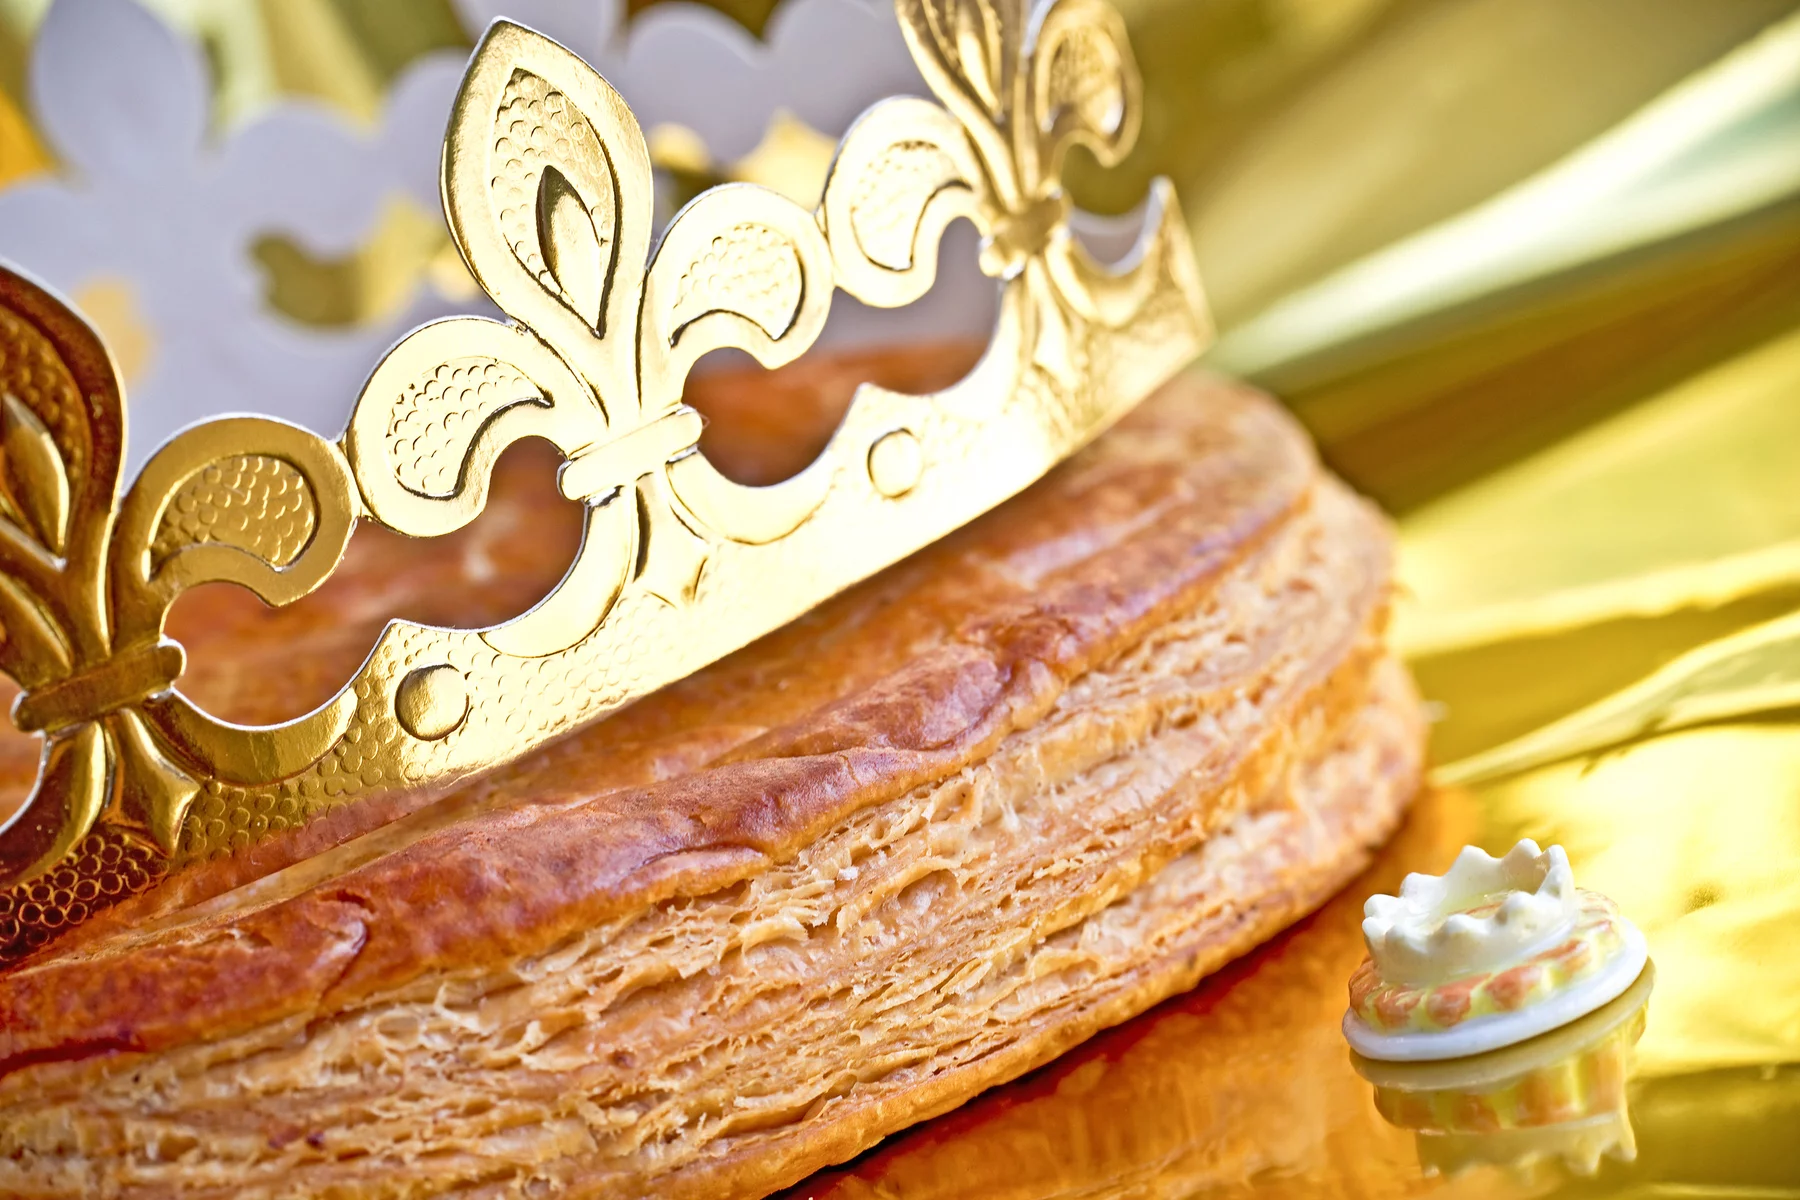 King's cake